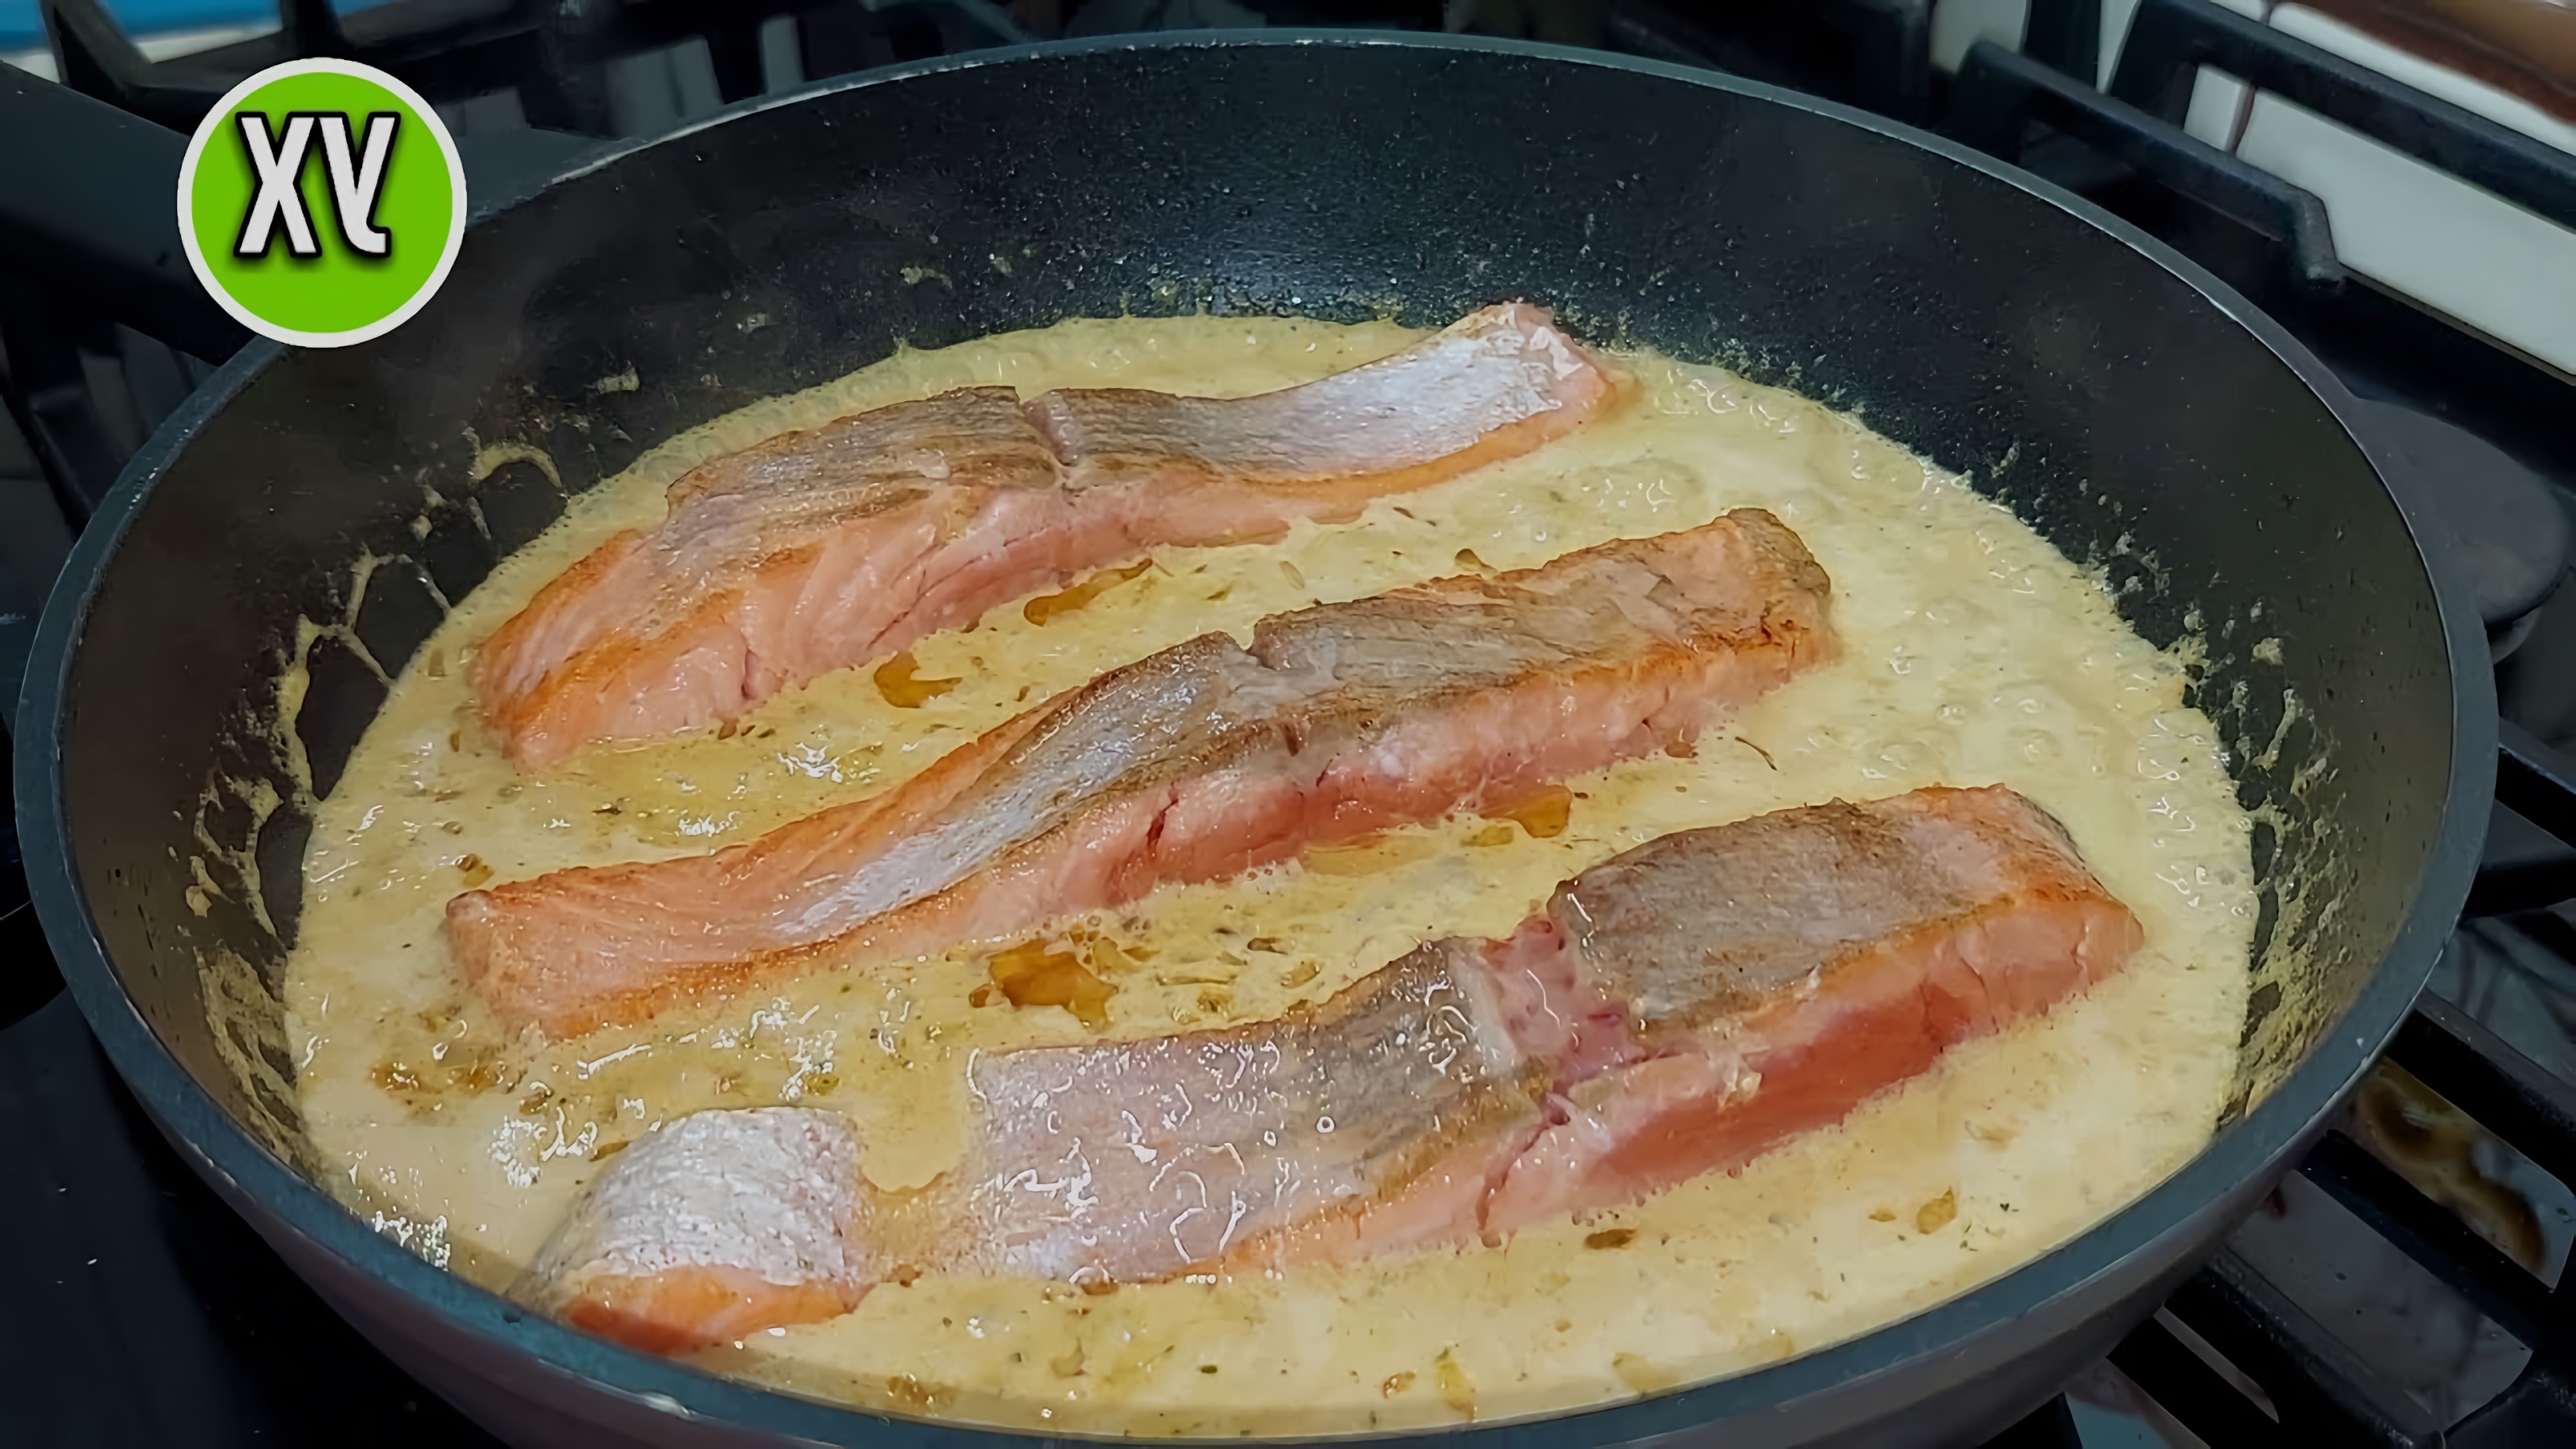 В этом видео демонстрируется процесс приготовления праздничного ужина, состоящего из пропаренного риса и рыбы